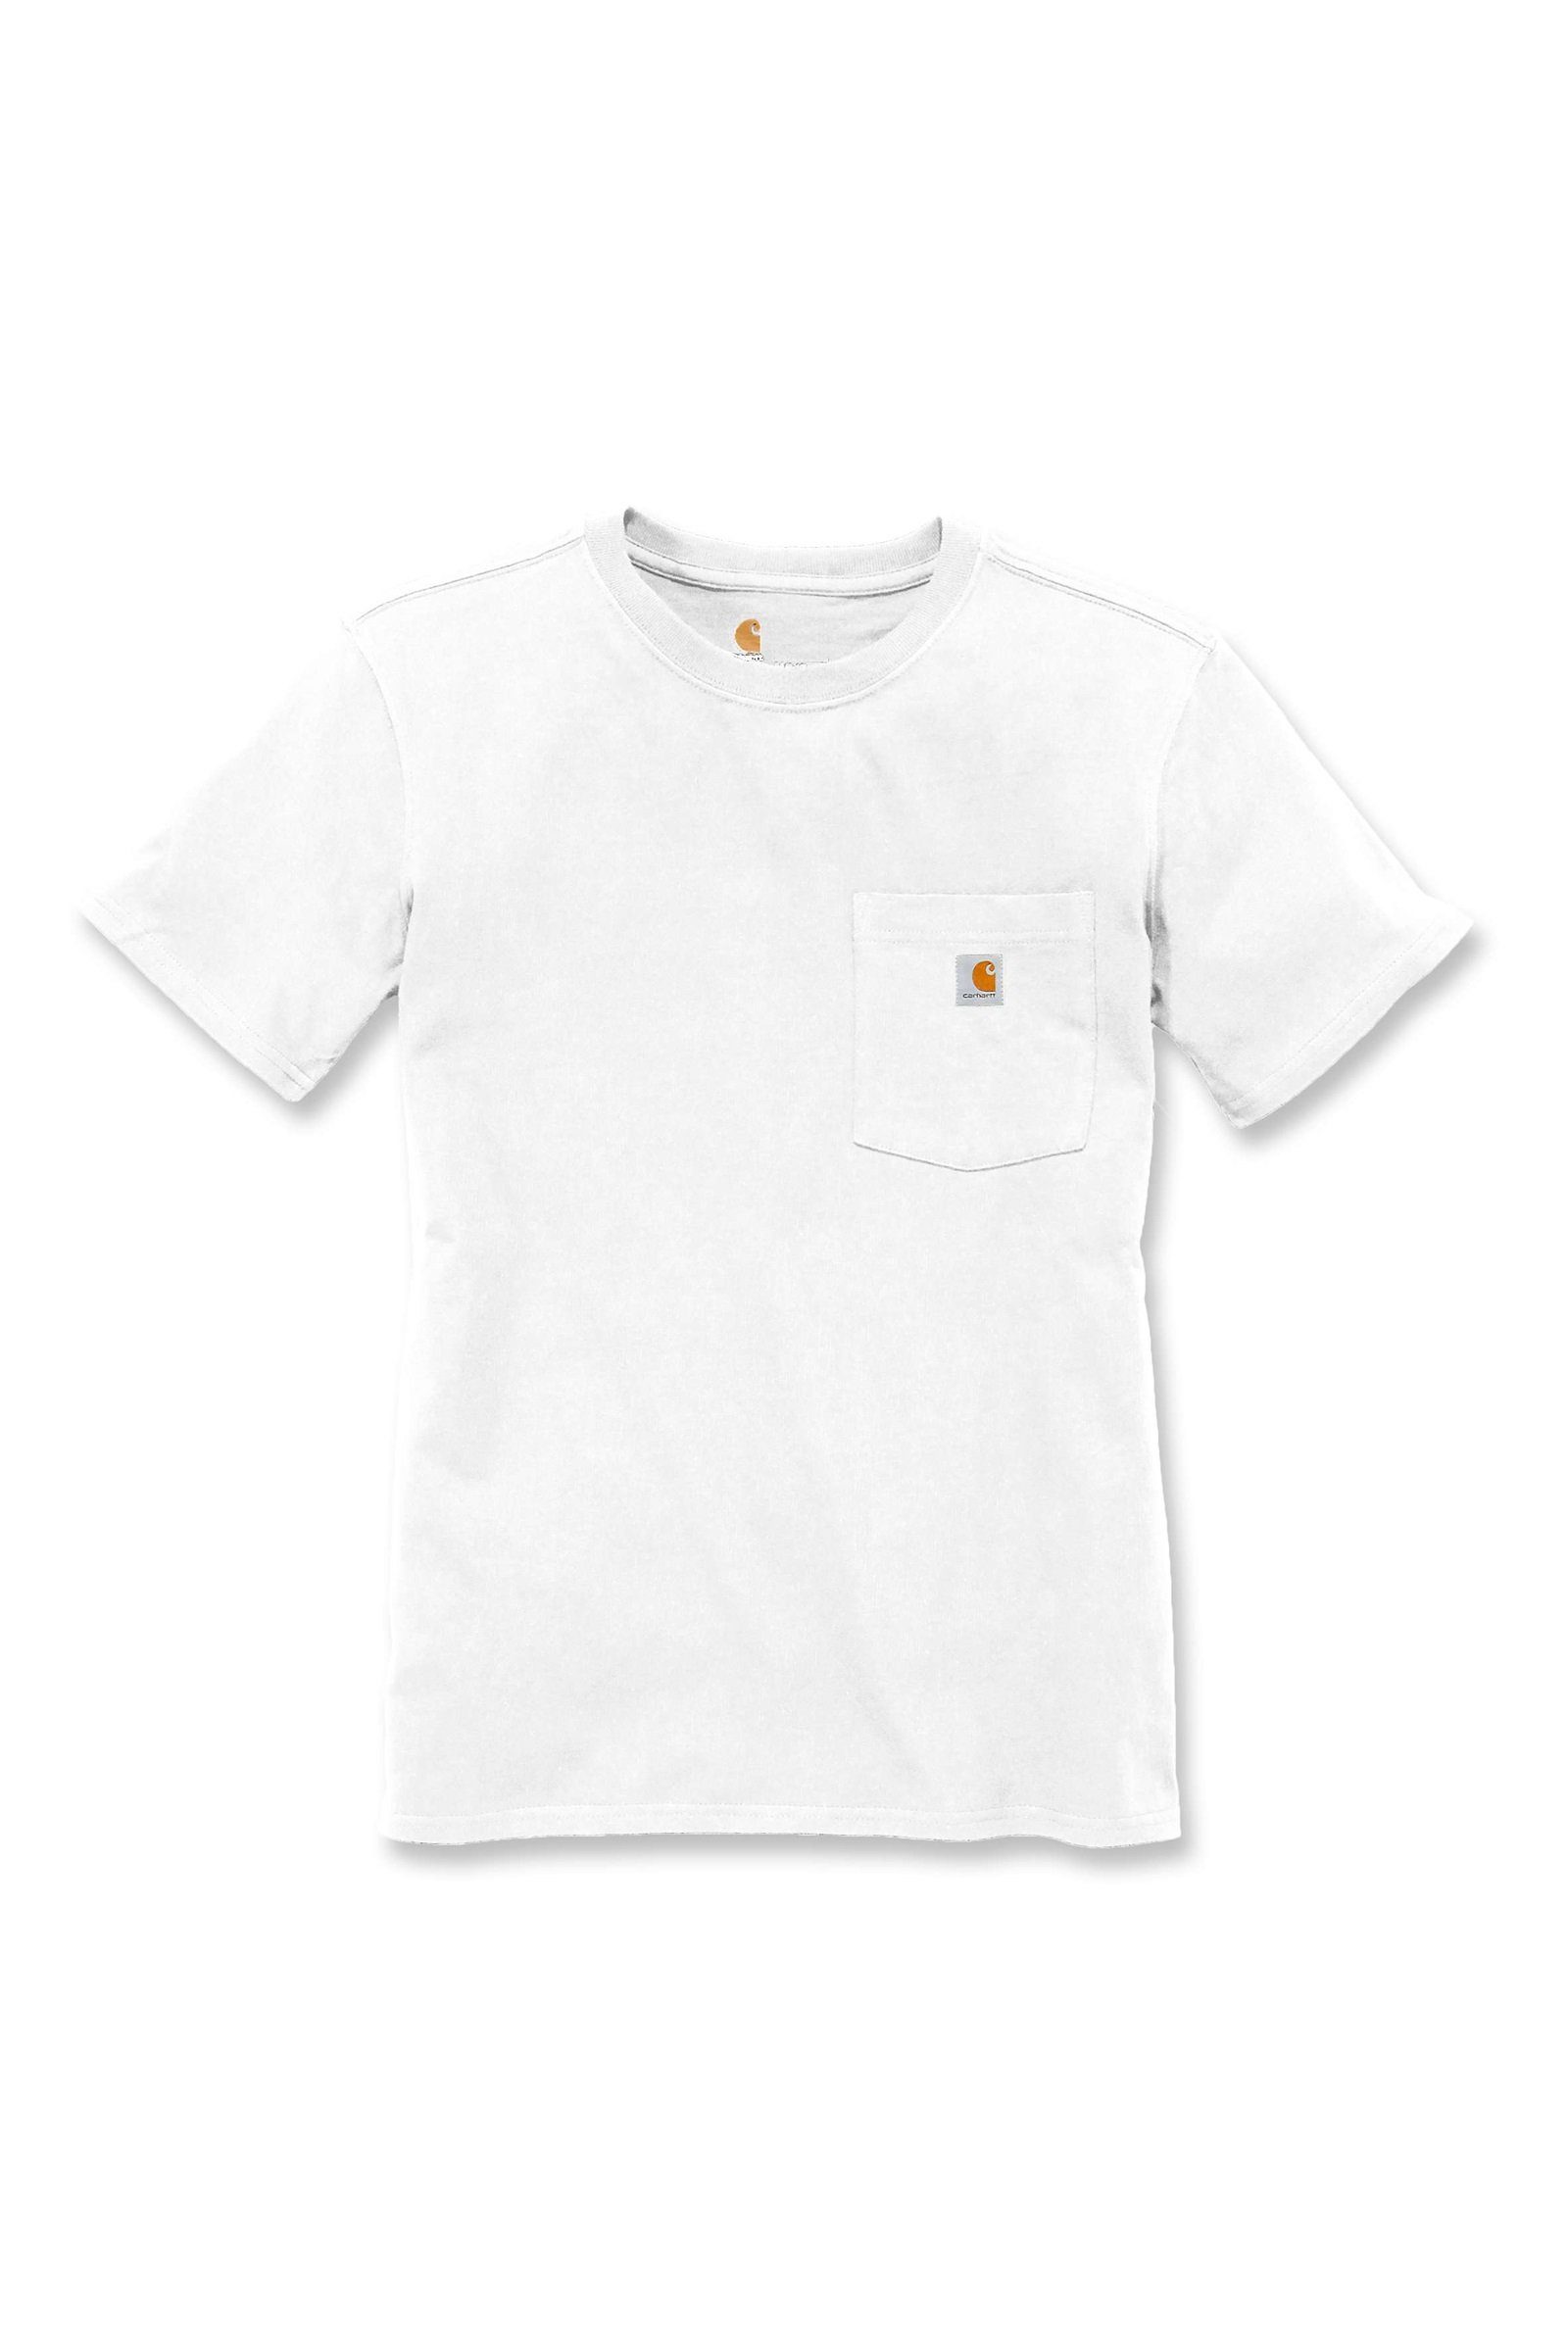 Fit Pocket Damen white T-Shirt Loose Adult Short-Sleeve Carhartt Heavyweight Carhartt T-Shirt